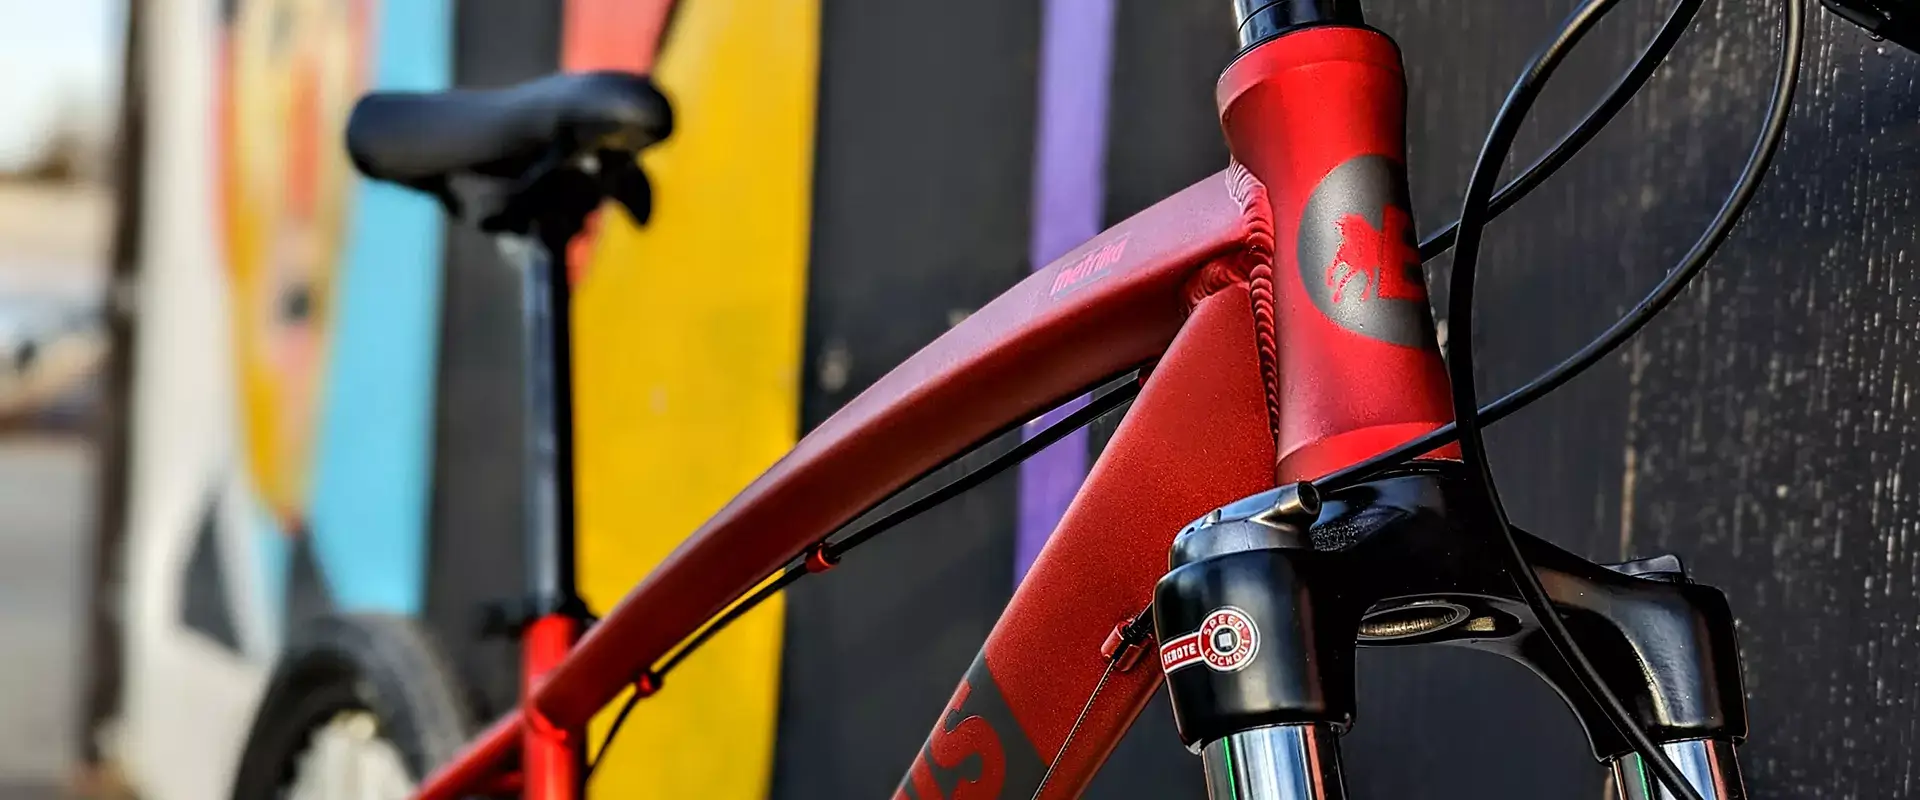 Dettaglio frontale di una MTB Action Boeris Bikes torino Rossa